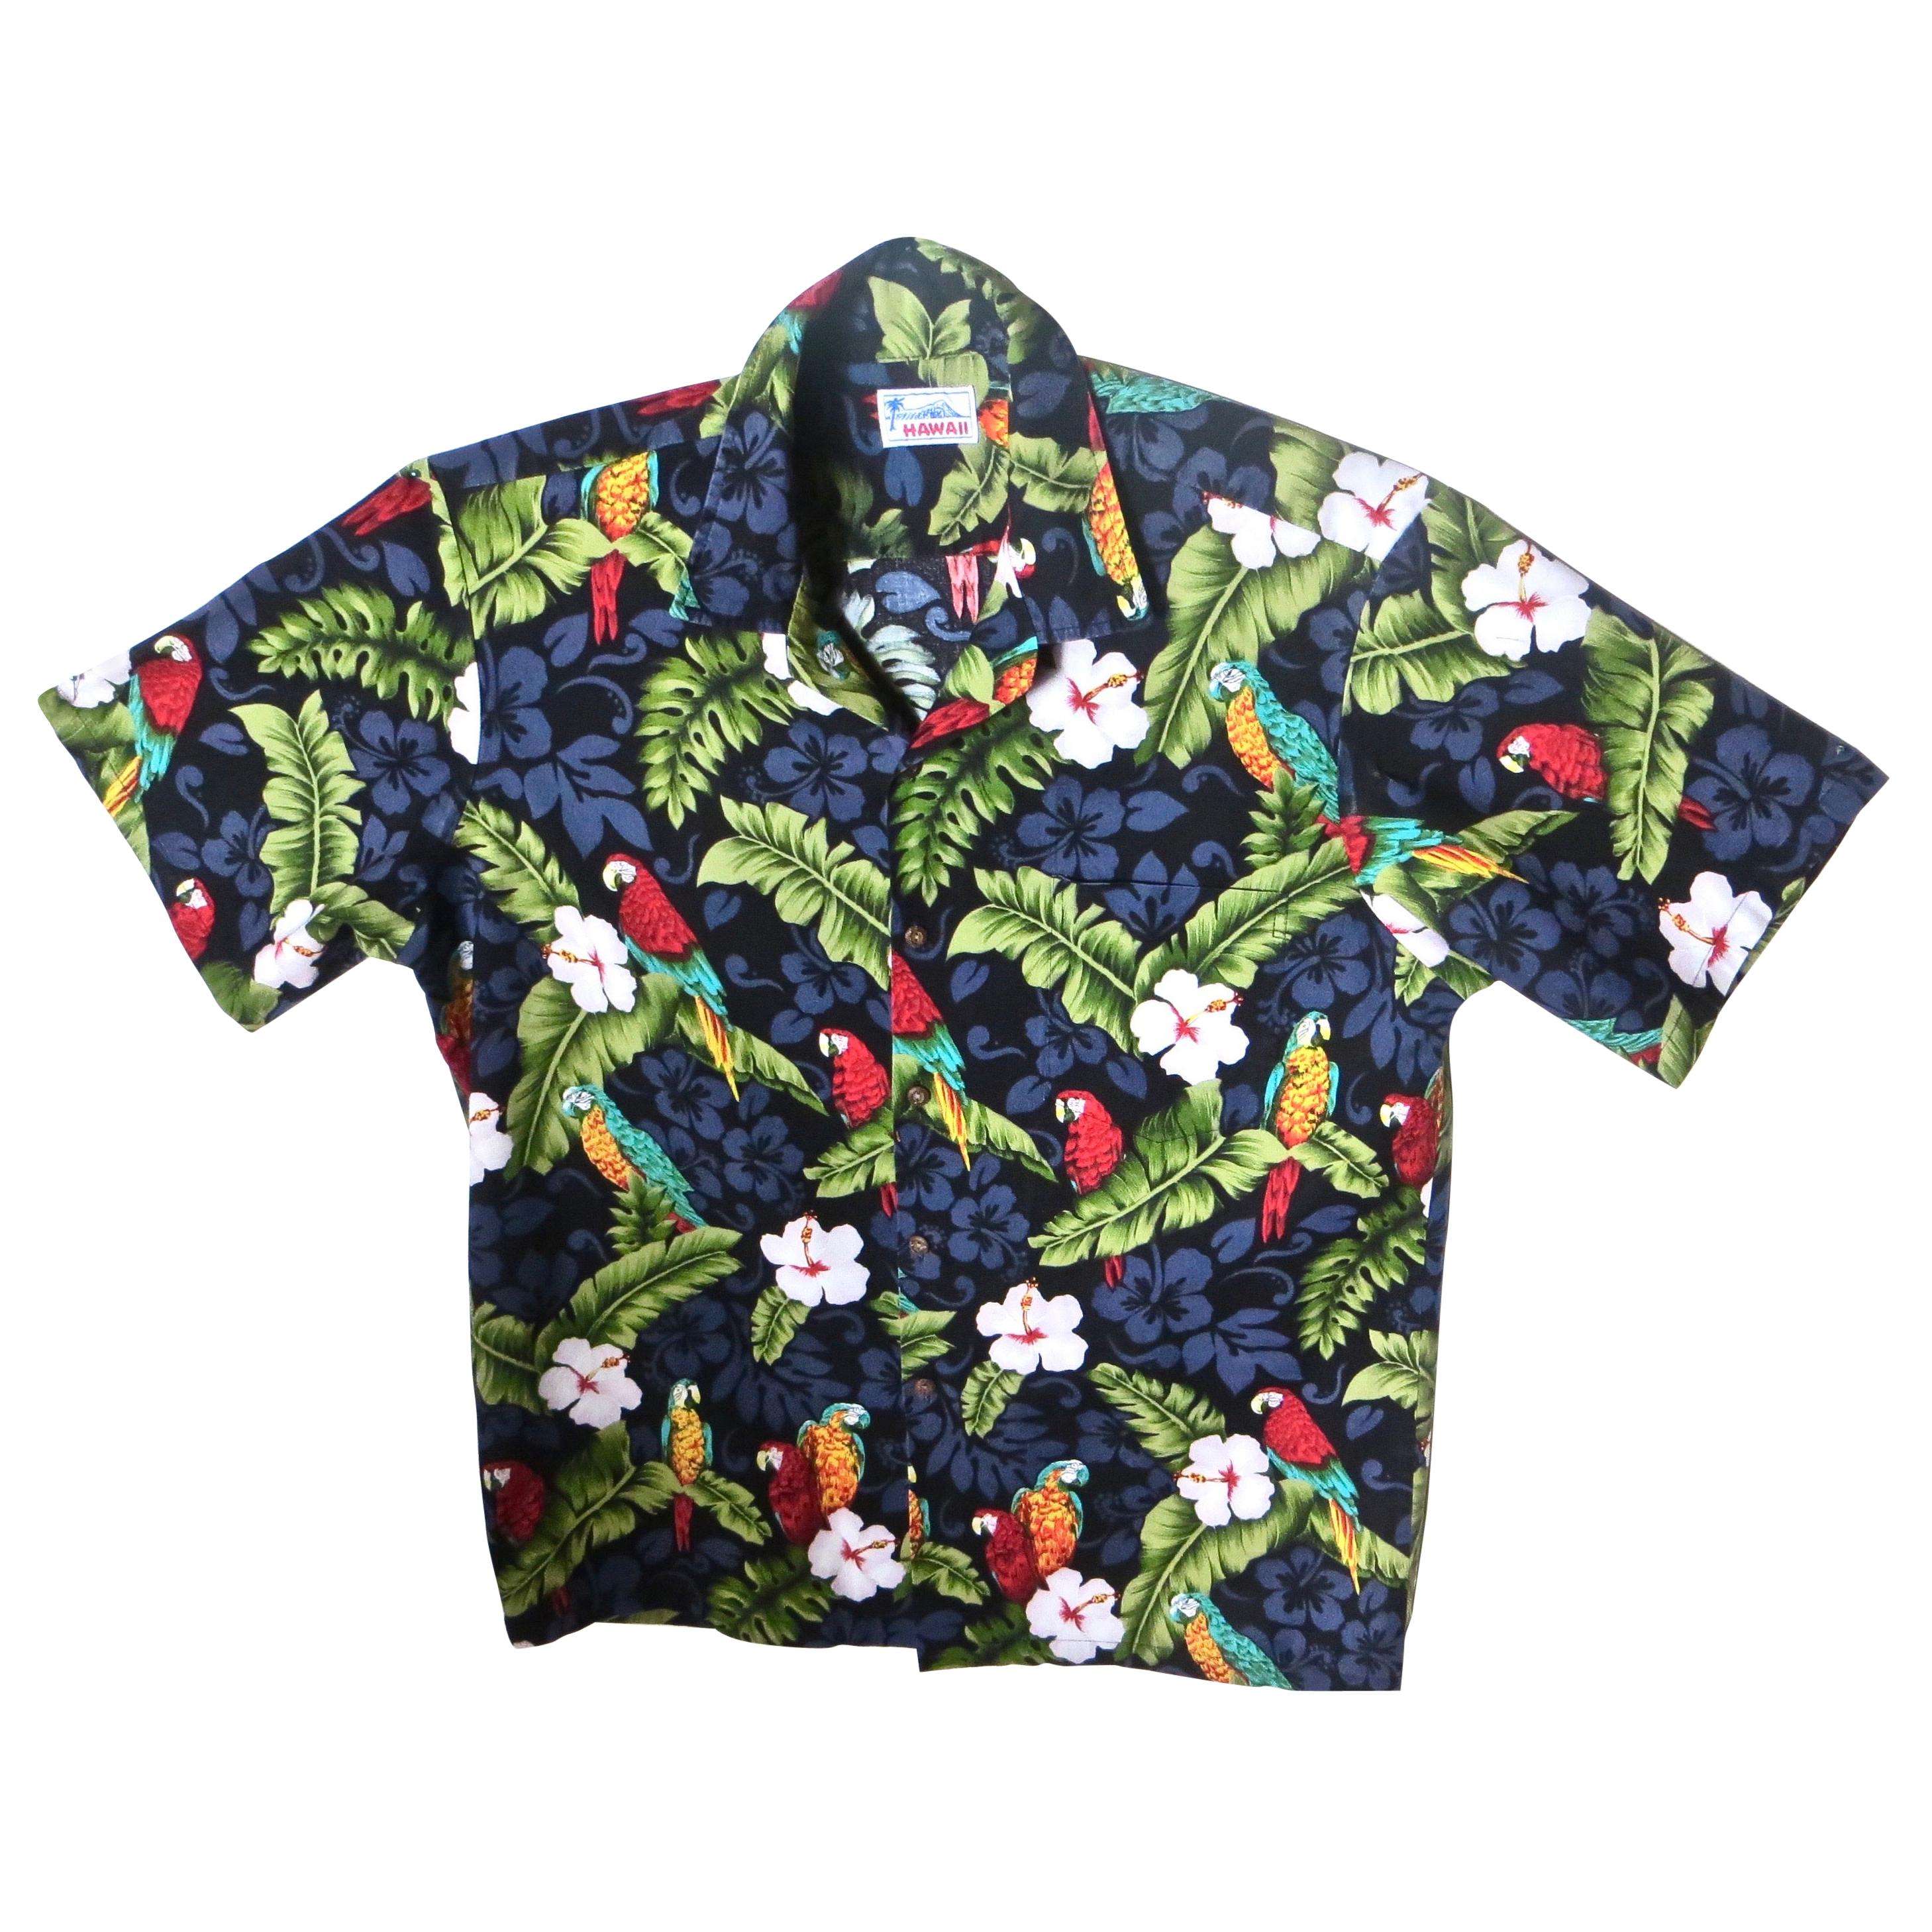 Chemise hawaïenne vintage avec perroquet et motifs floraux, pour hommes, taille X, circa 1970